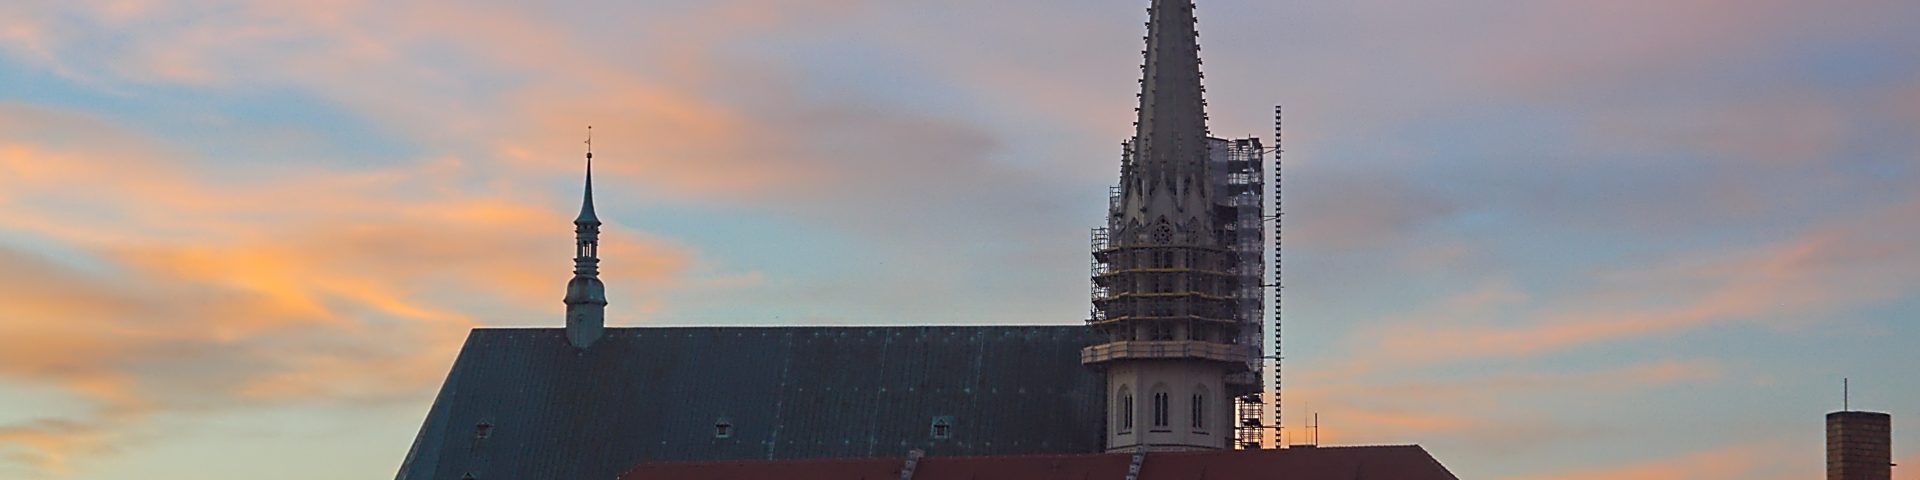 ein Jahr in Görlitz Peterskirche in Görlitz bei Sonnenaufgang